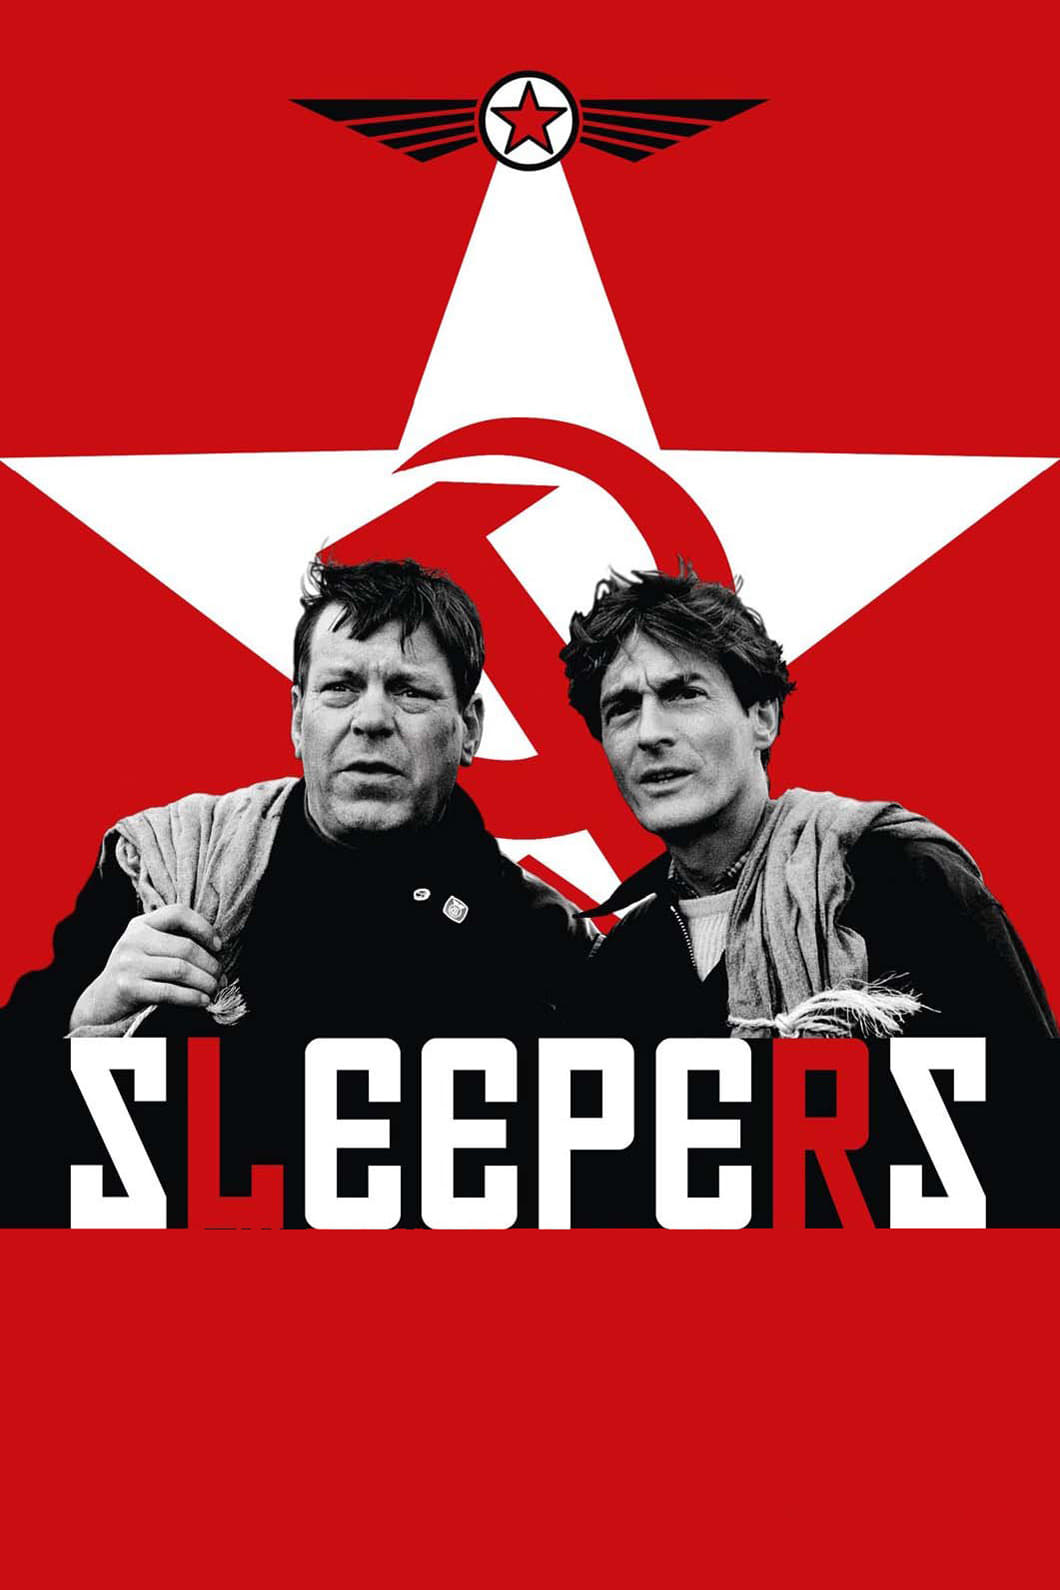 Sleepers film